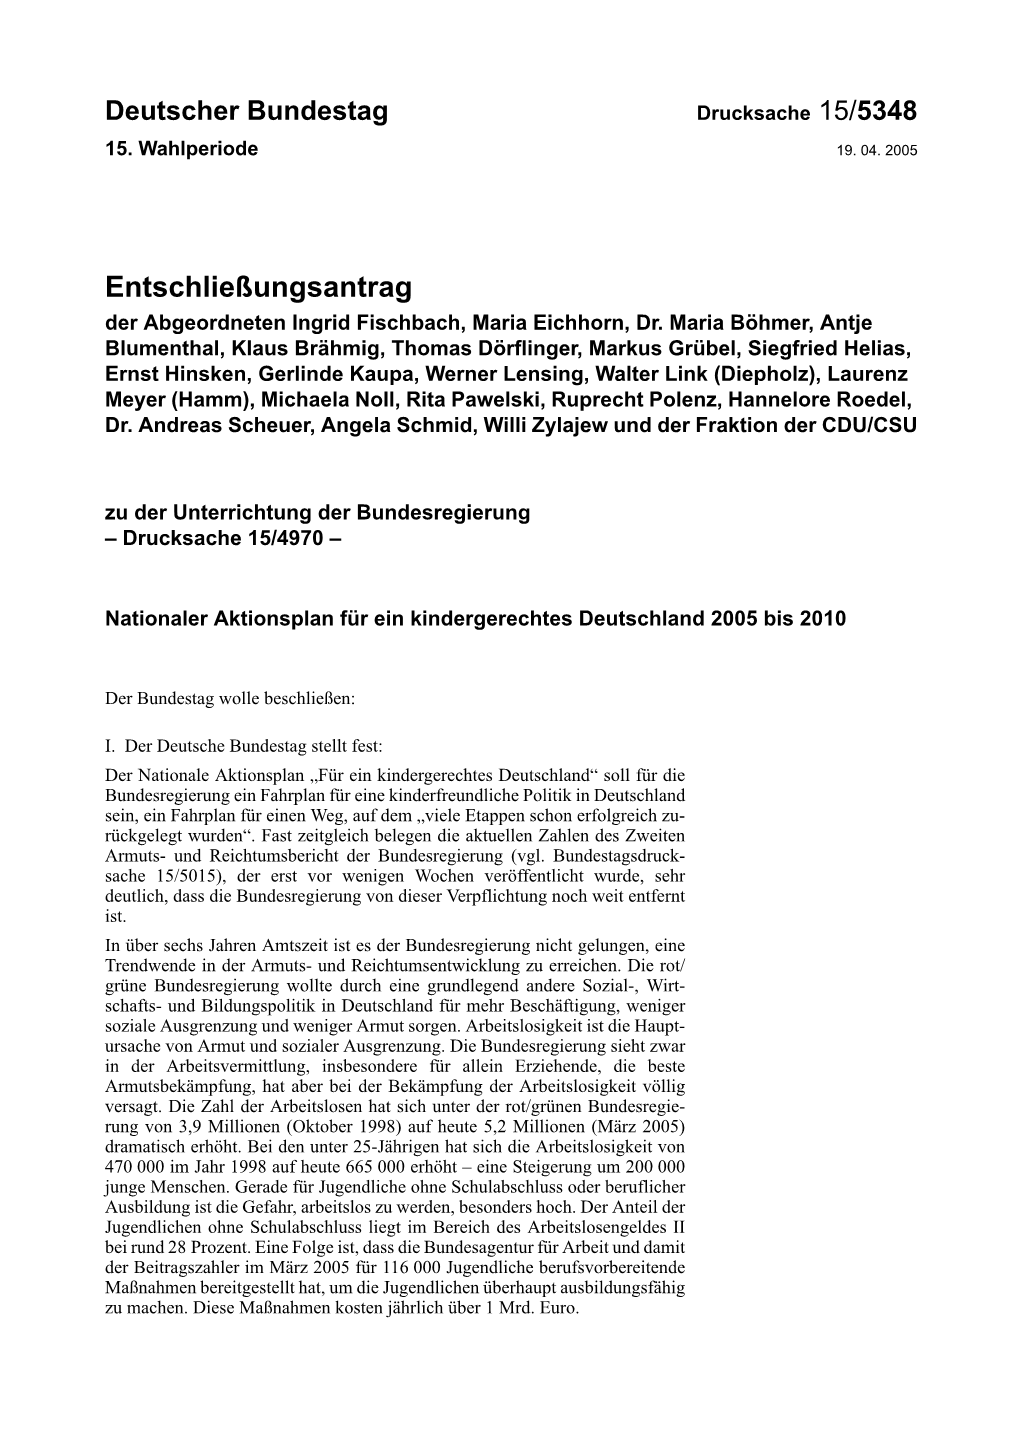 Entschließungsantrag Der Abgeordneten Ingrid Fischbach, Maria Eichhorn, Dr